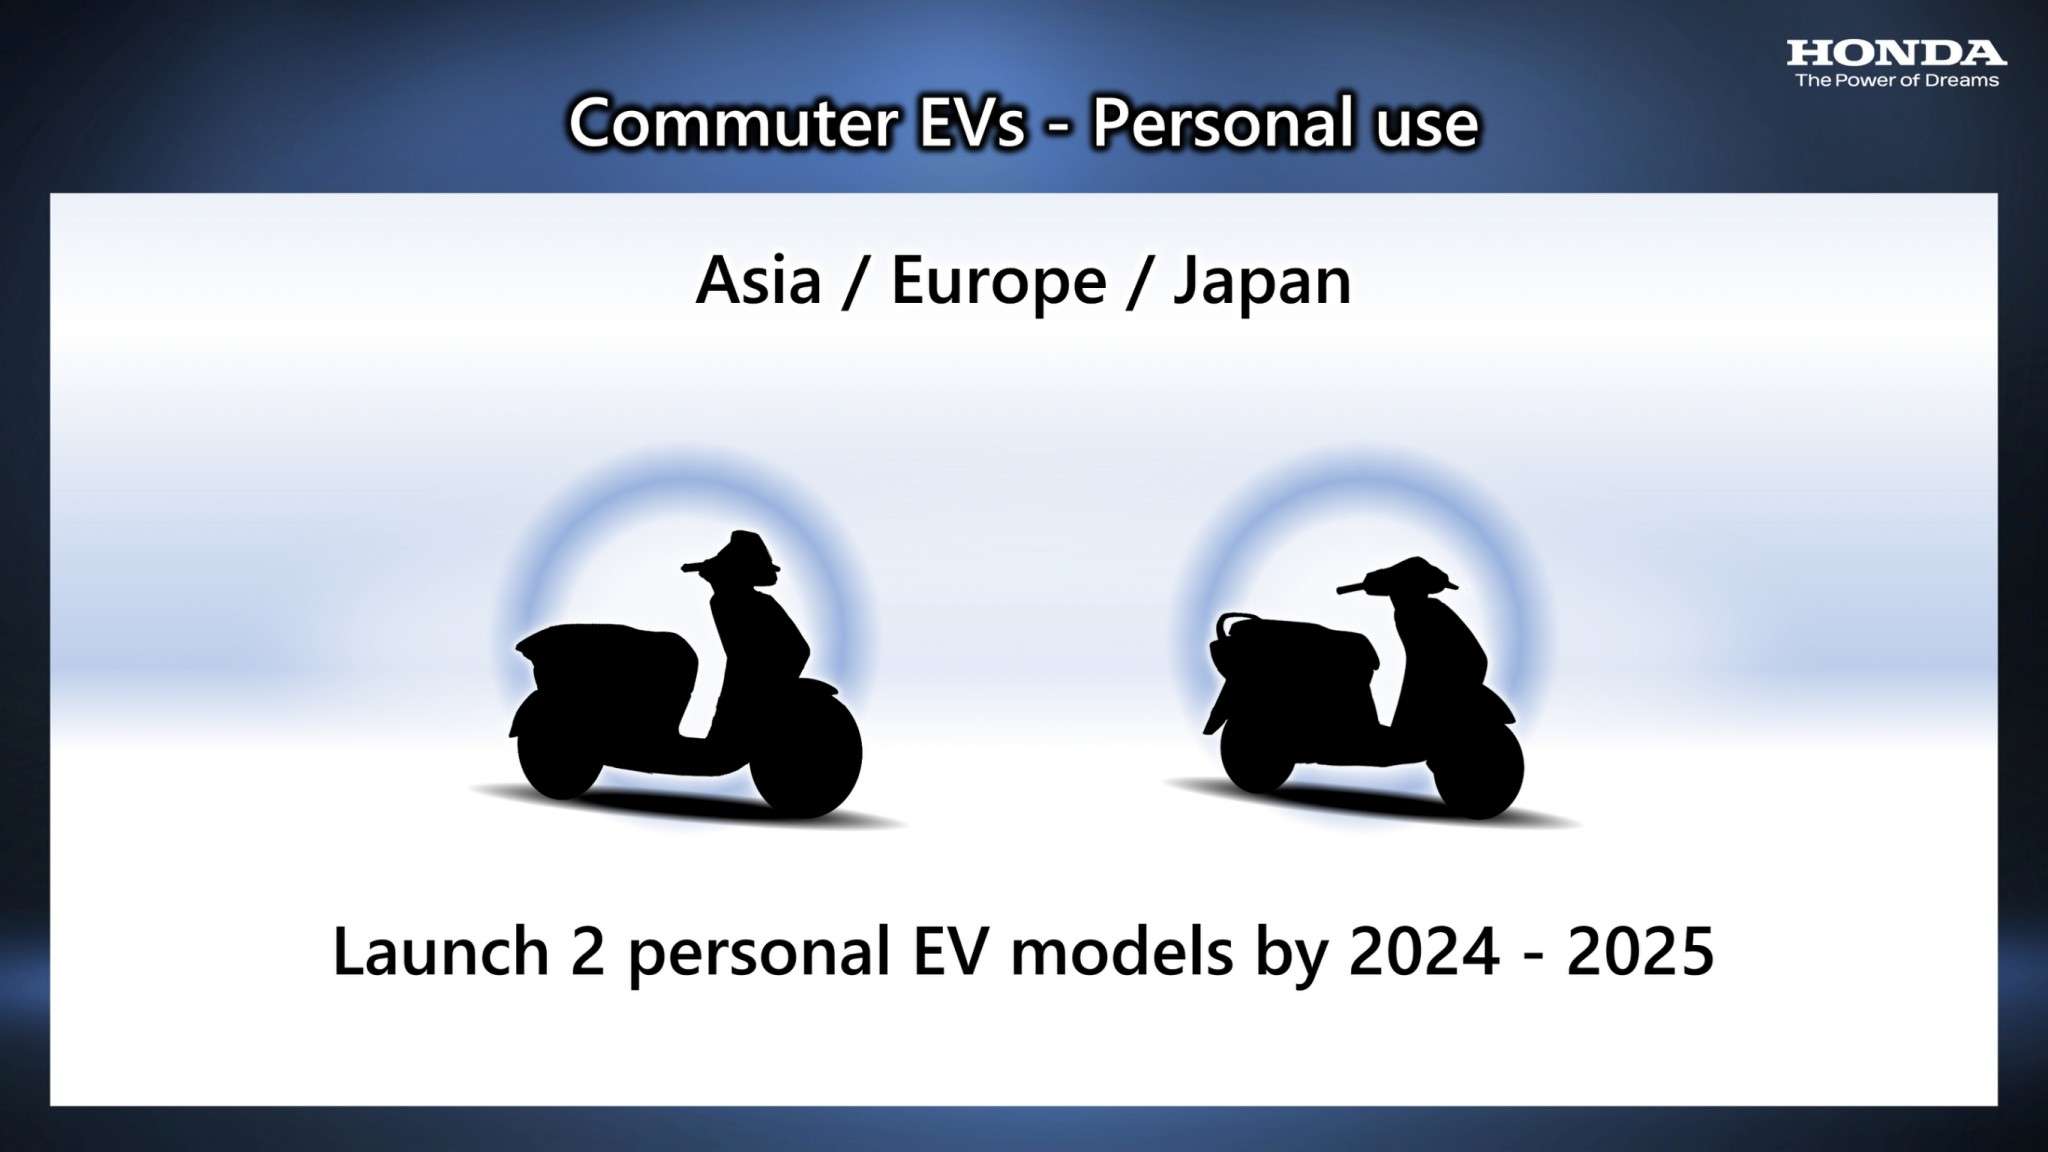 1 Commuter EVs Personal use ฮอนด้ามอเตอร์ประกาศพัฒนารถจักรยานยนต์ไฟฟ้าสู่ความเป็นกลางทางคาร์บอน วางเป้าเปิดตัวรถรุ่นใหม่ไม่น้อยกว่า 10 รุ่น ภายในปี 2025 - 1 Commuter EVs Personal use